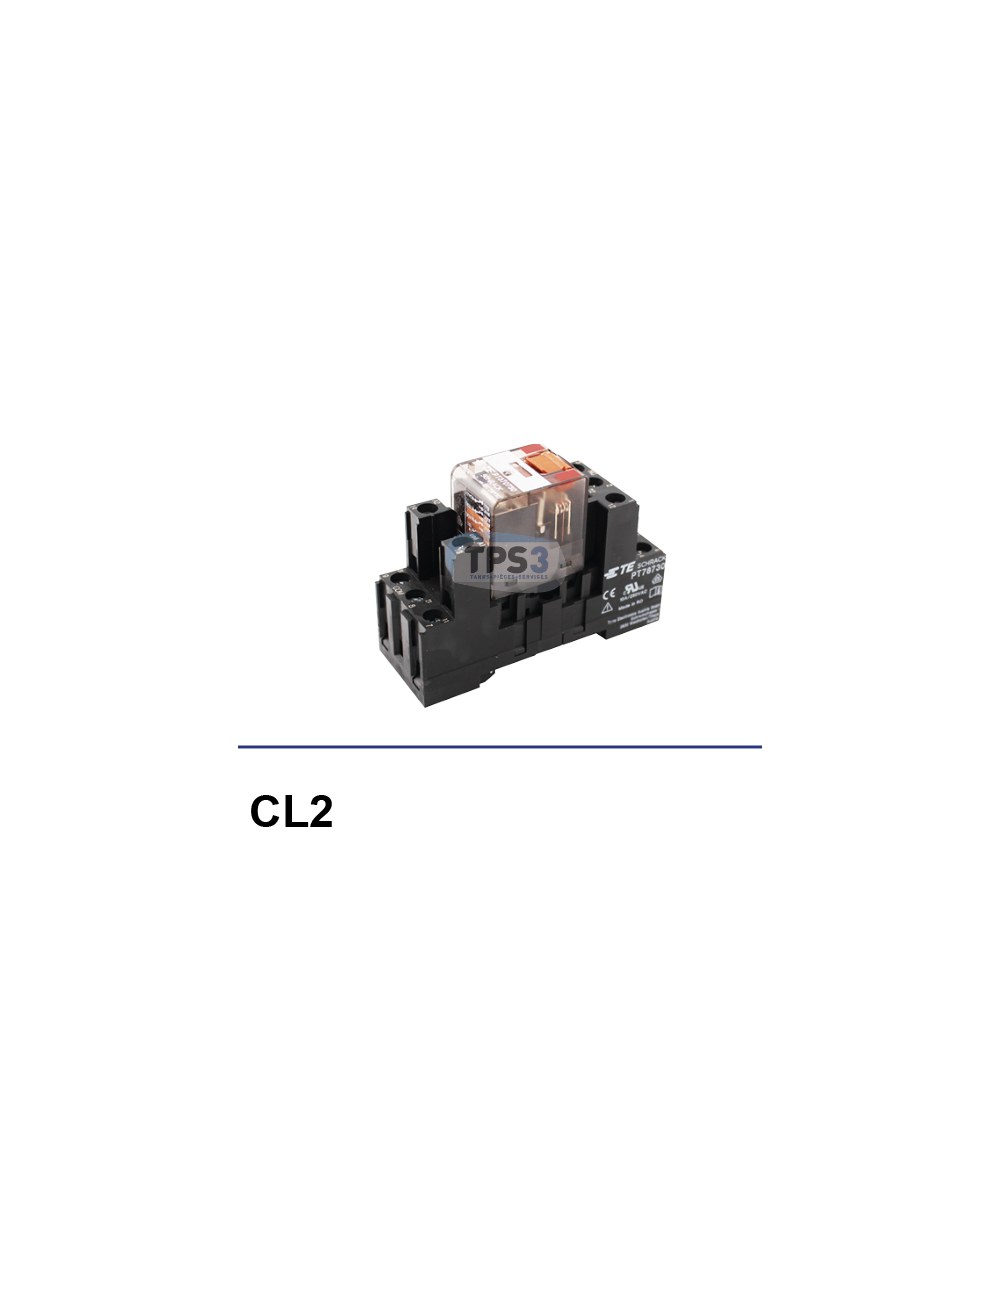 Support + relais pompe de lavage CL2